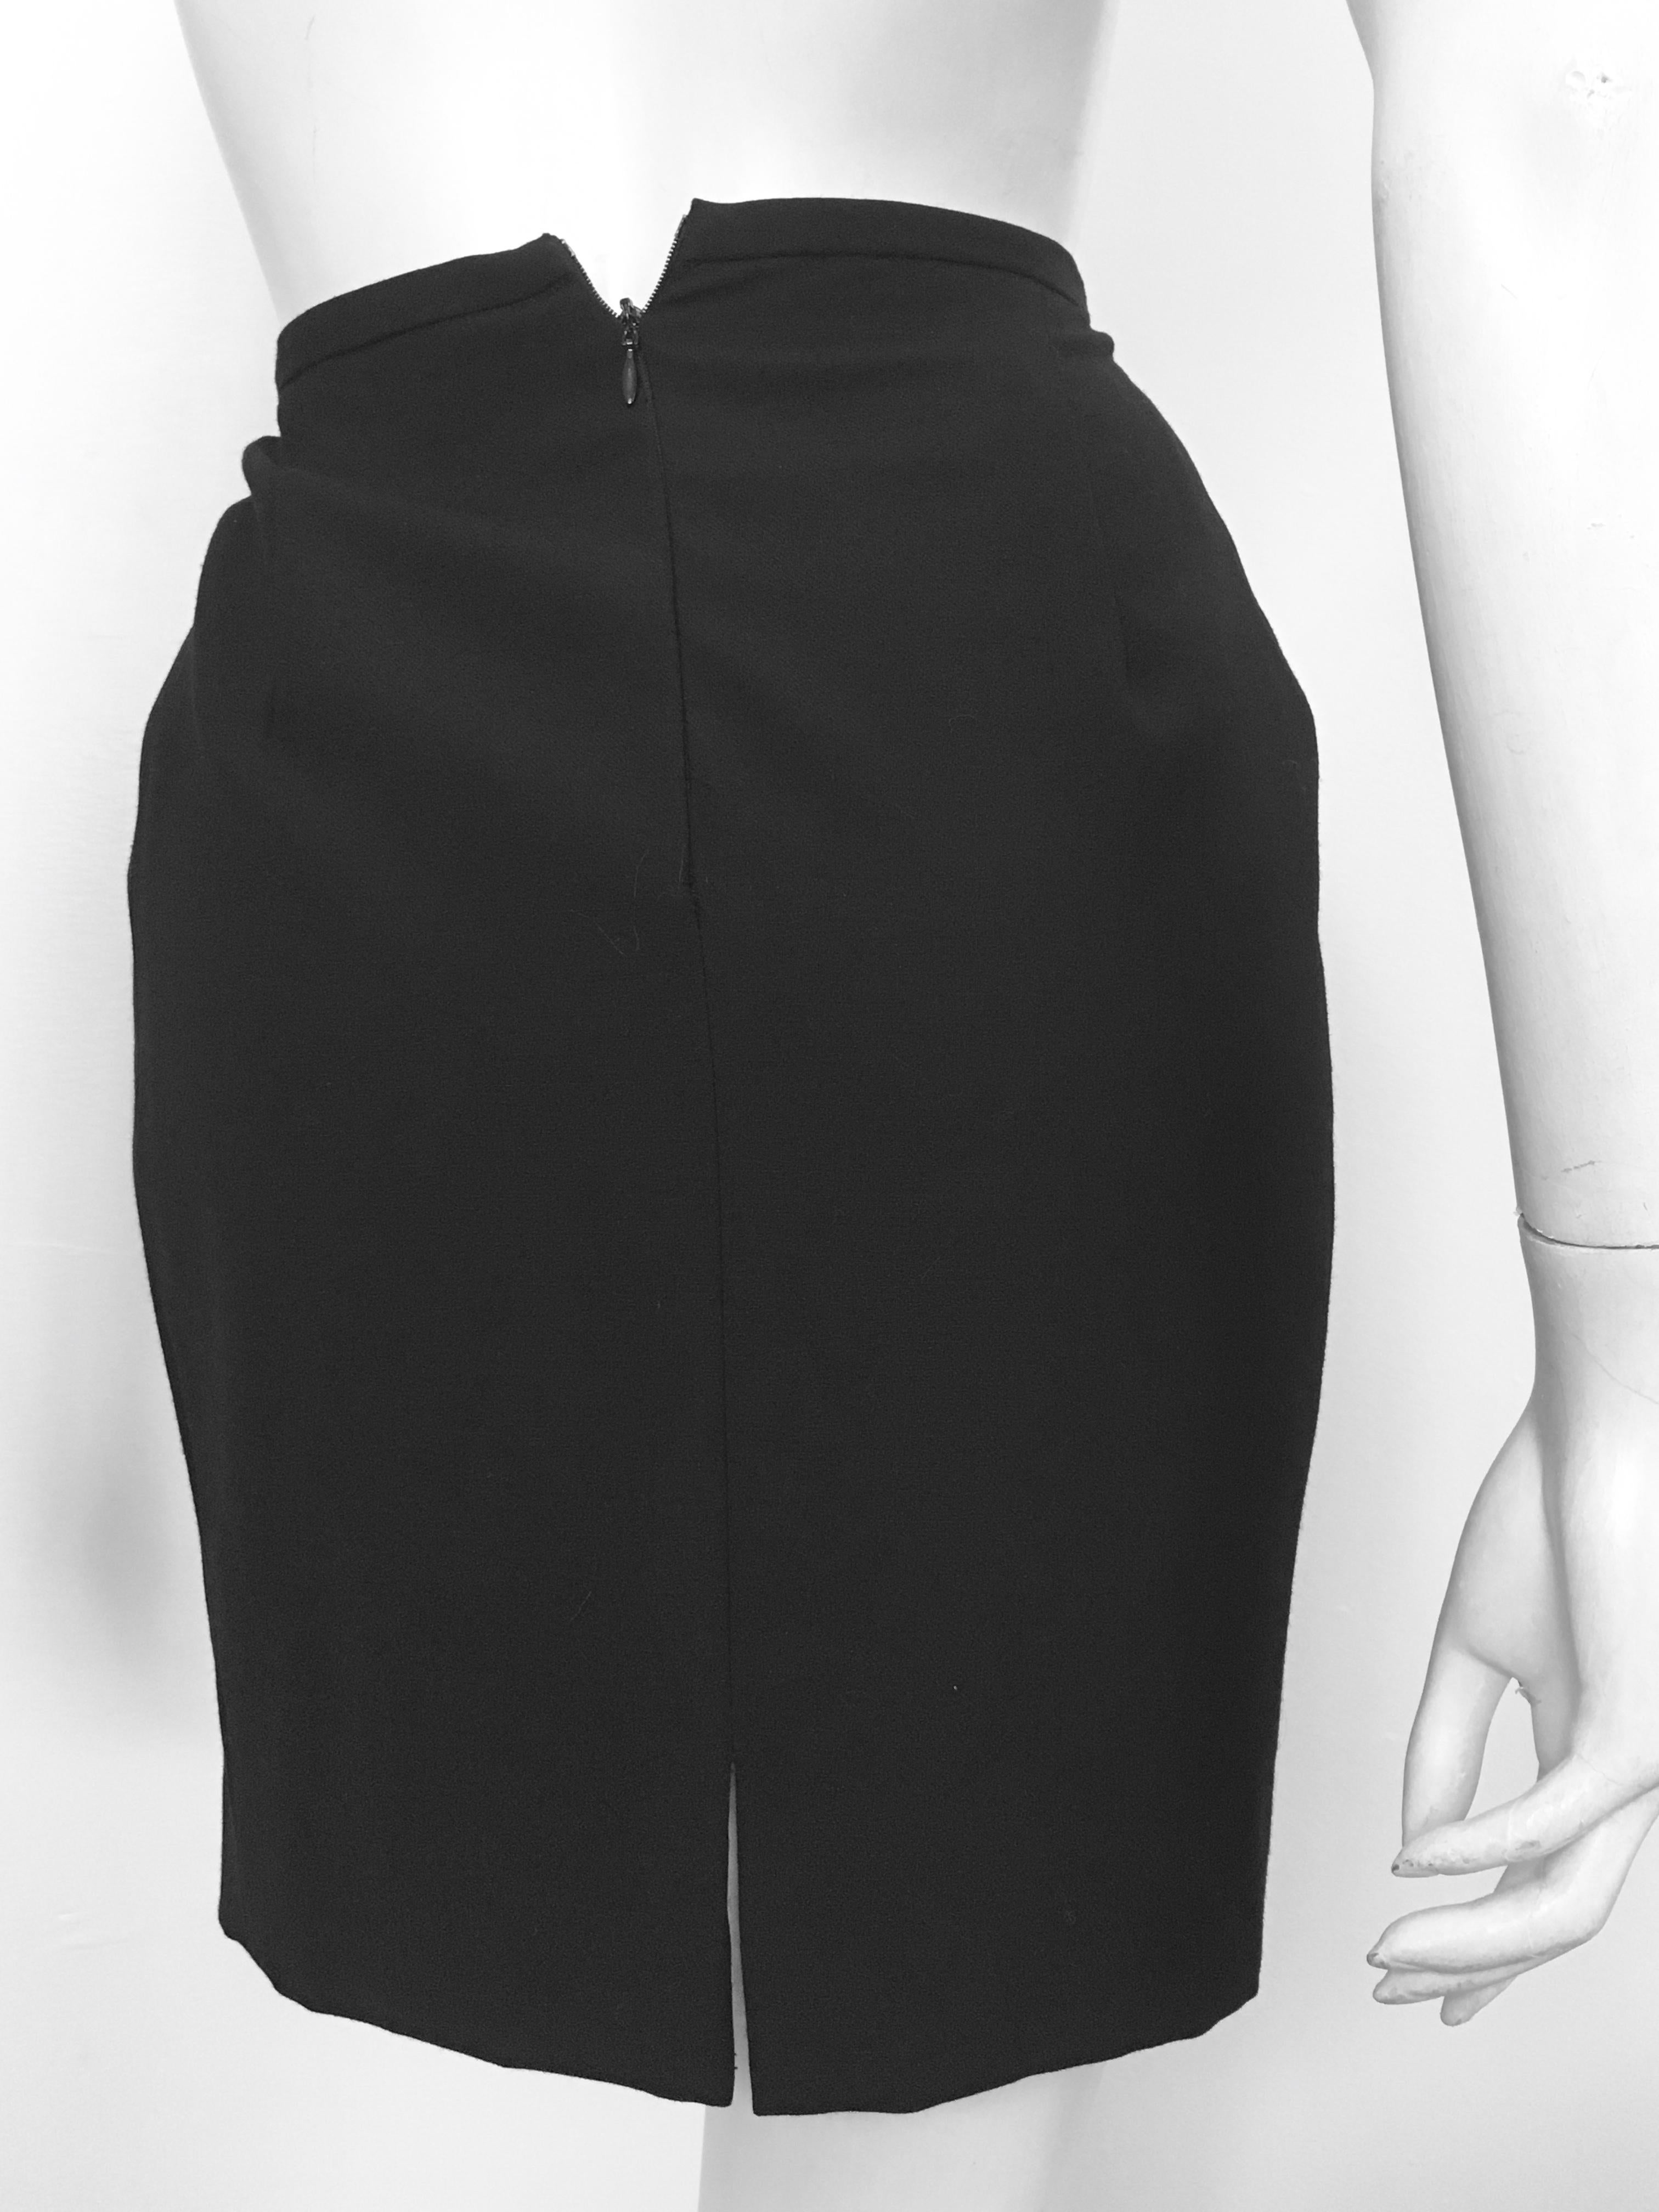 Gianfranco Ferre 1980s Black Short Skirt Size 0. For Sale 1